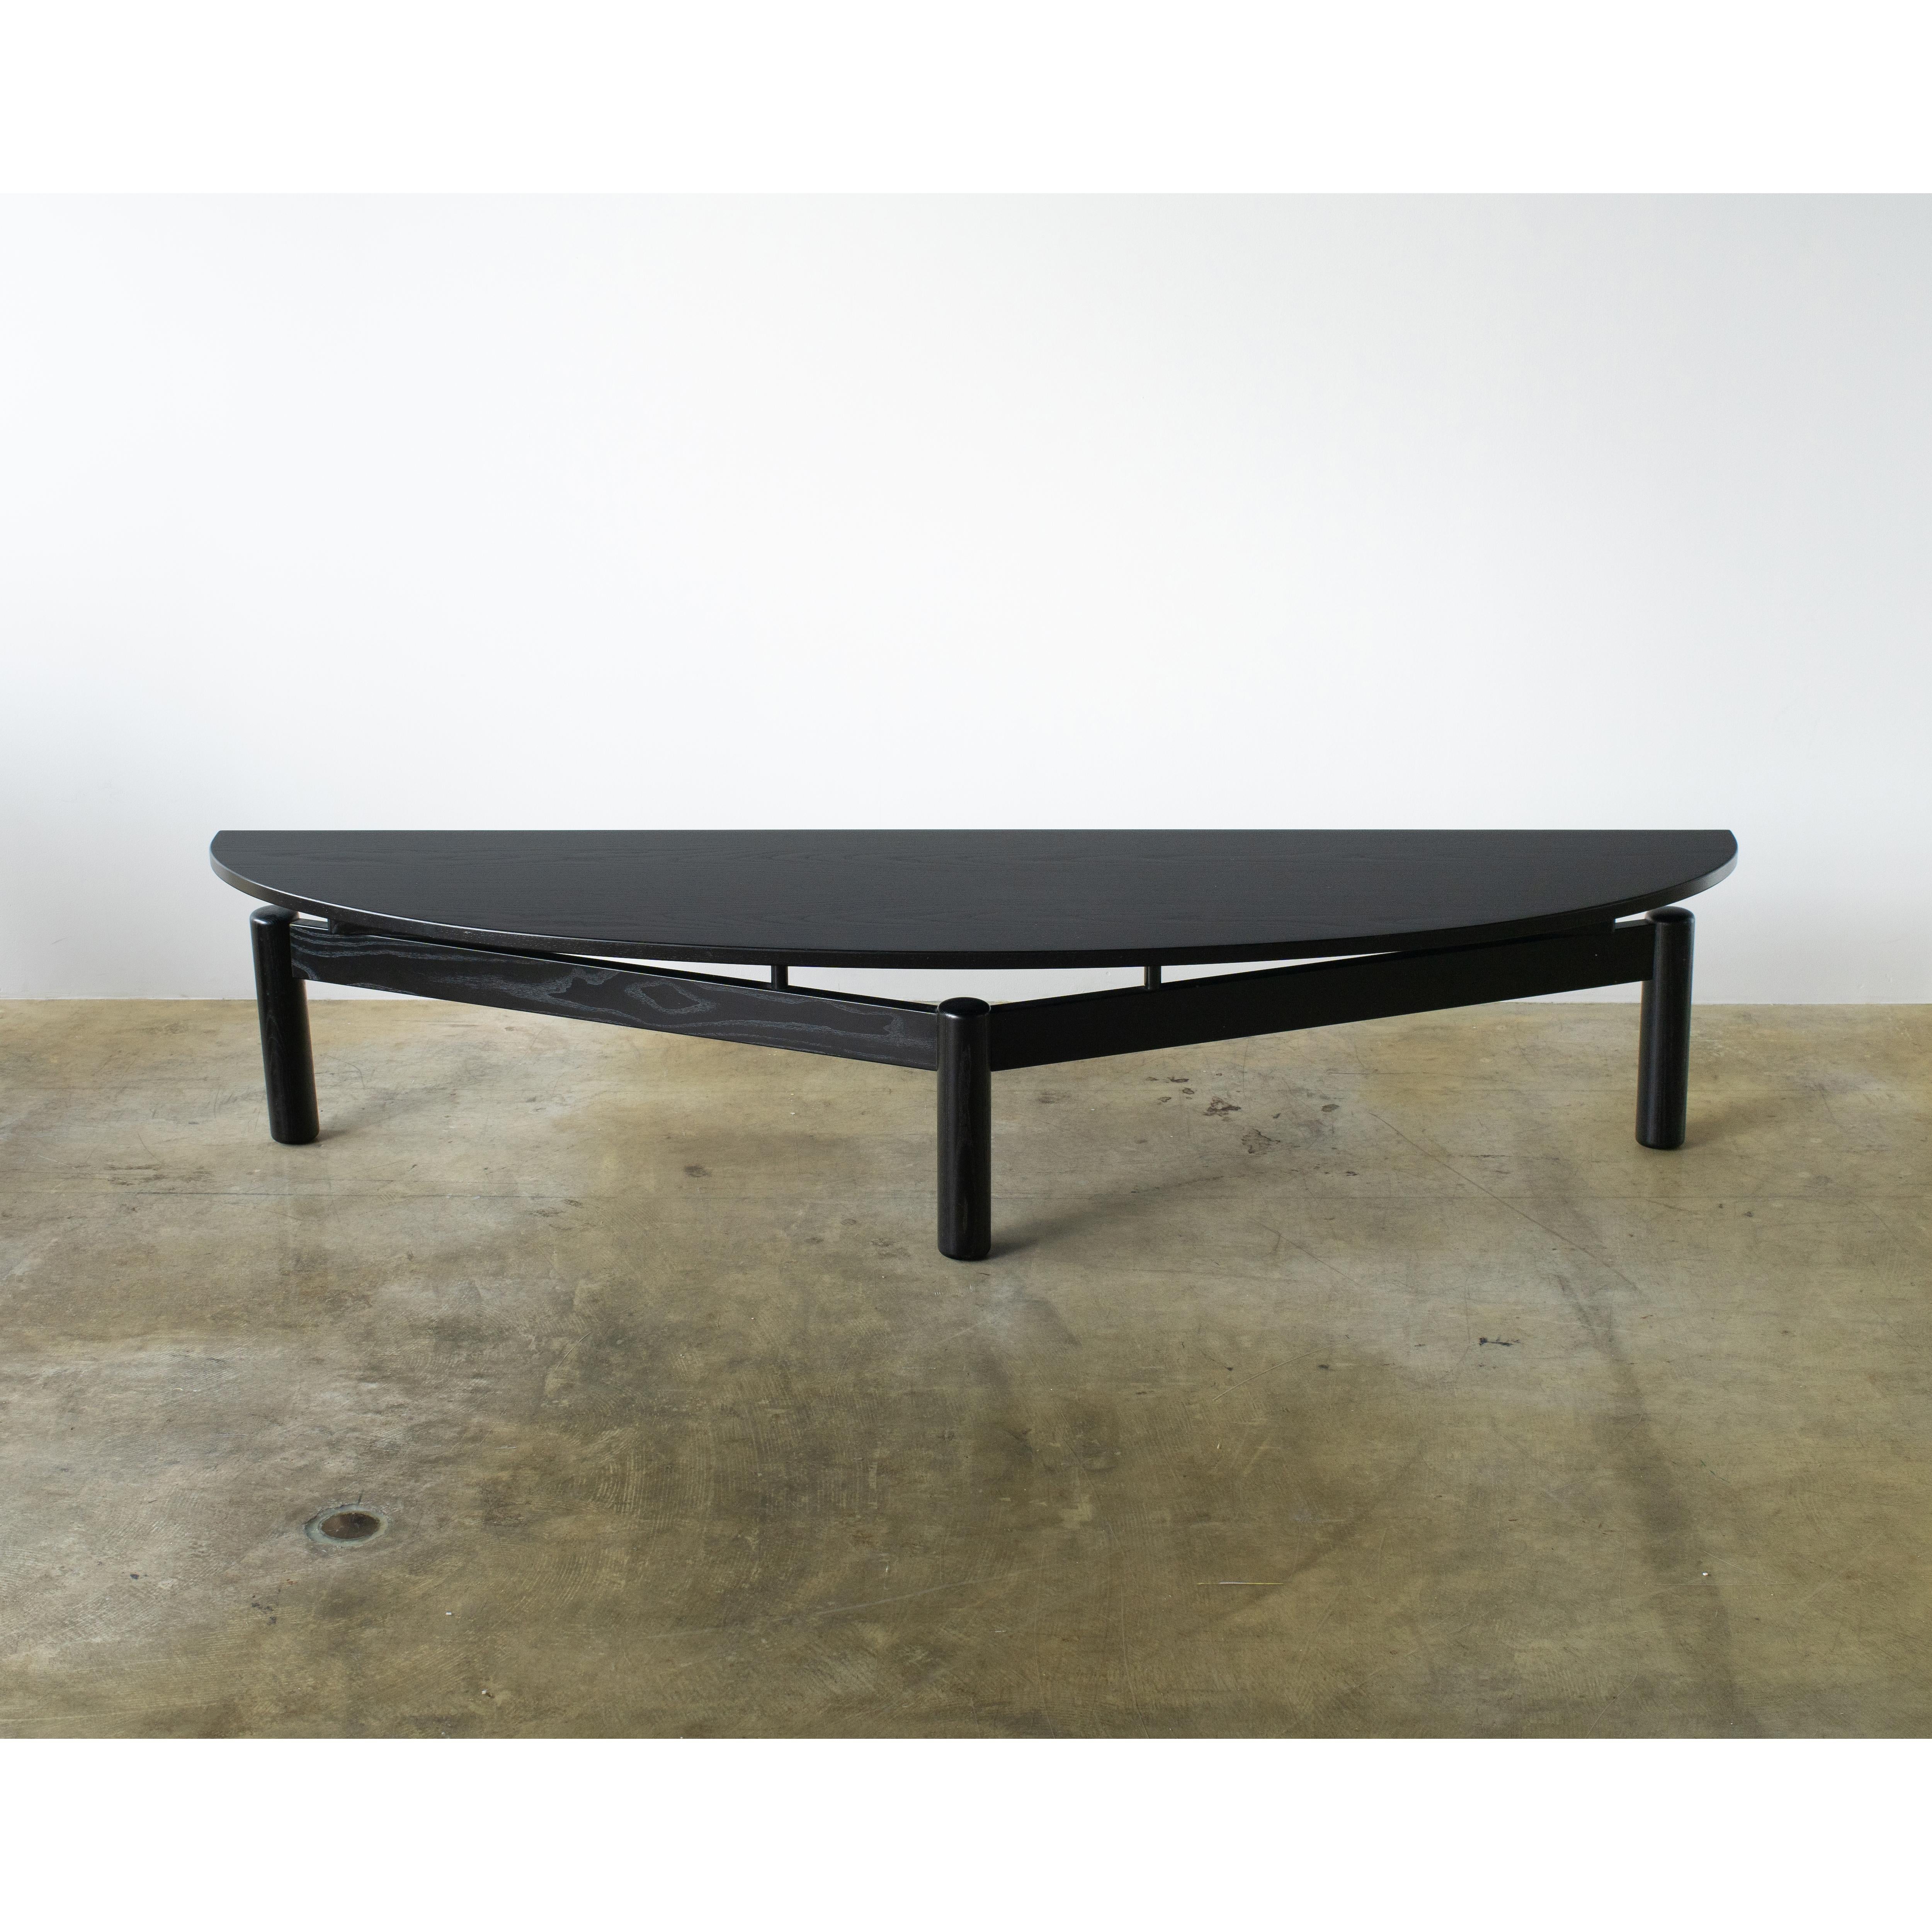 Sindbad Couchtisch
Entworfen von Vico Magistretti für Cassina. Halb ovaler Tisch für den Mitteltisch. Wird als niedriger Konsolentisch vor die Wand gestellt.  Wahrscheinlich kann es auch als TV-Sideboard verwendet werden.
Hergestellt aus Holz,